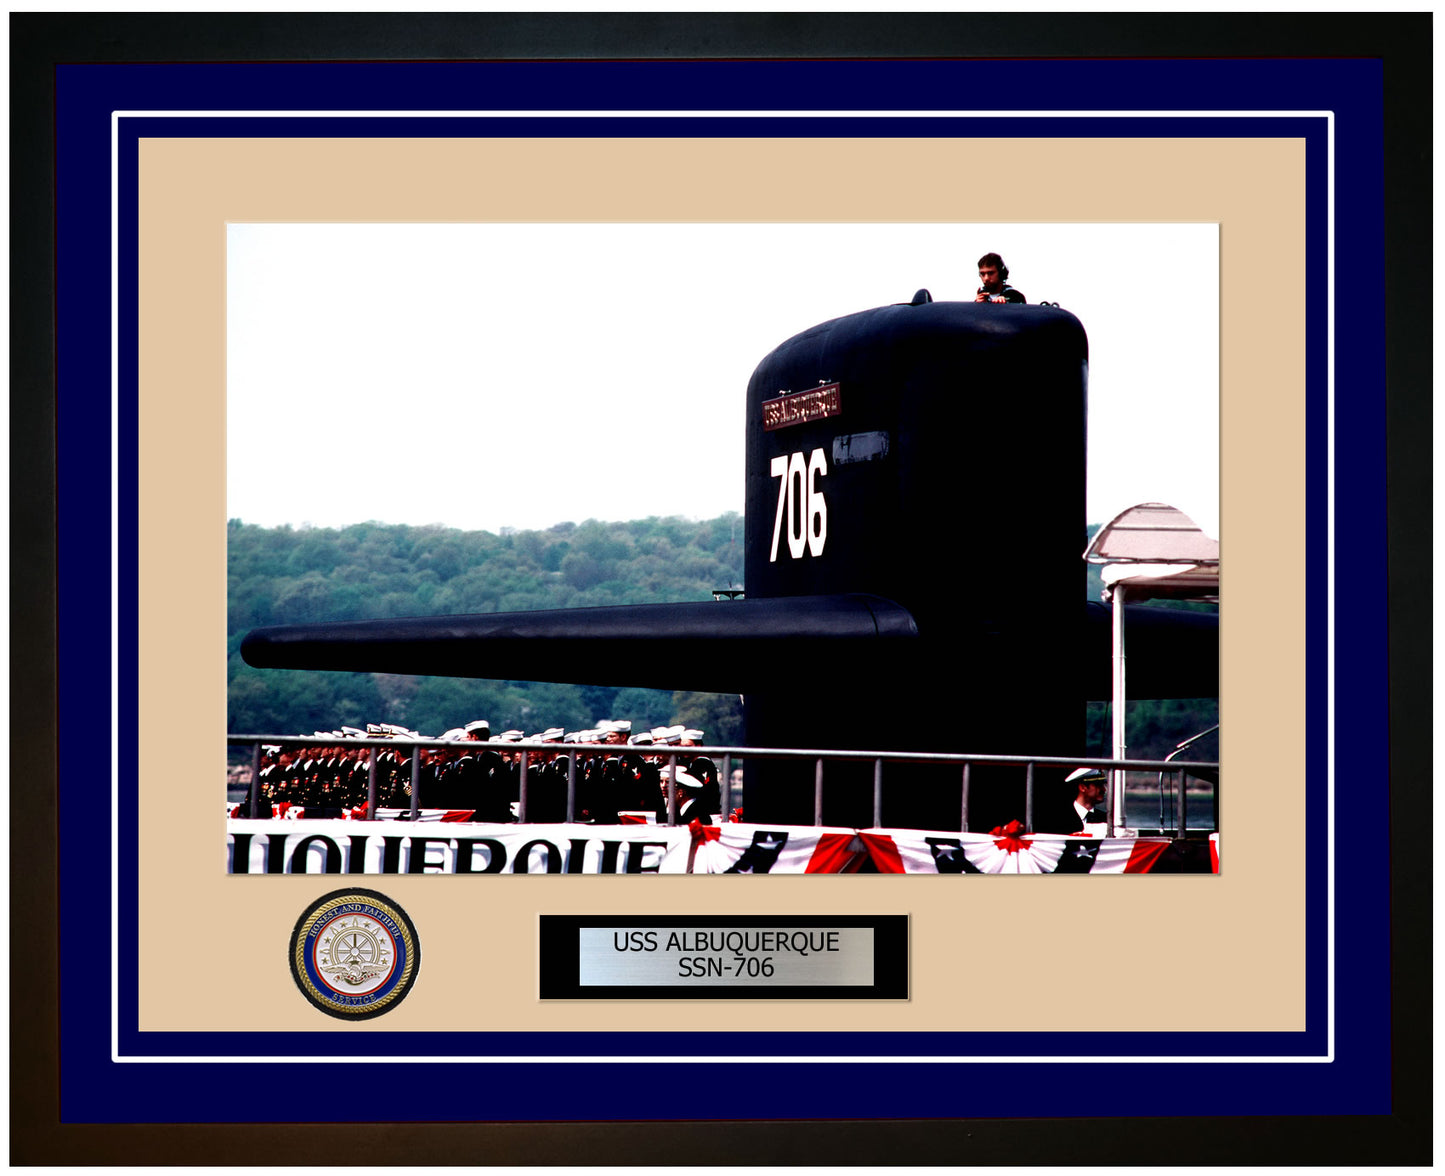 USS Albuquerque SSN-706 Framed Navy Ship Photo Blue